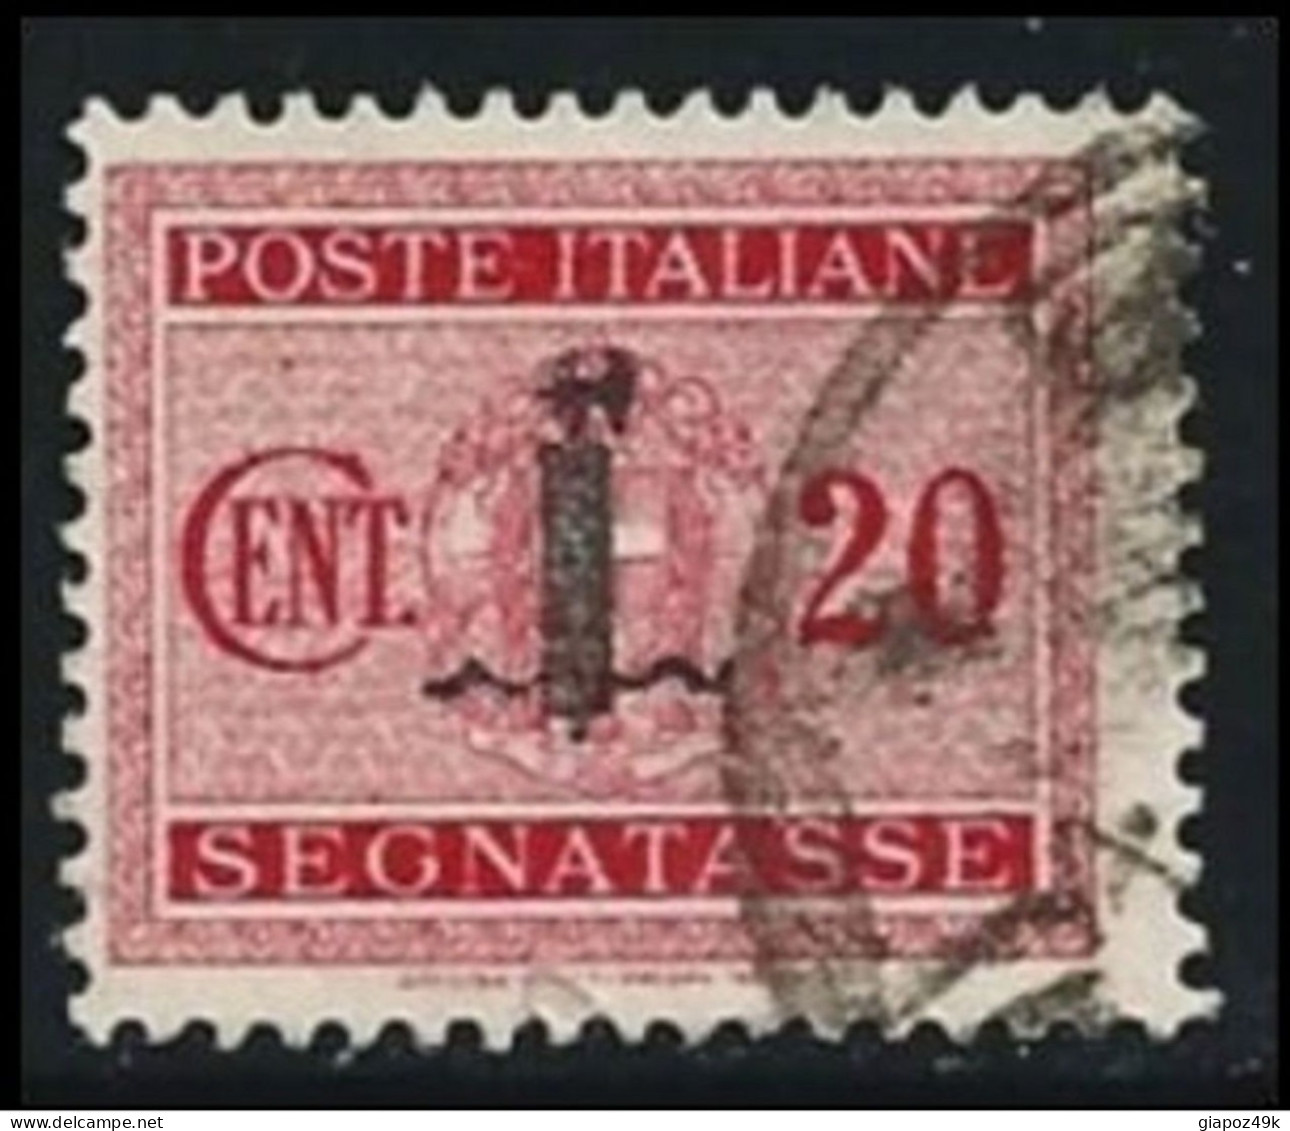 ● ITALIA - R.S.I. 1944 ֍ SEGNATASSE ● N.° 62 Usato ● Fil. S ● Cat. ? € ️● Lotto N. 950 ● - Portomarken